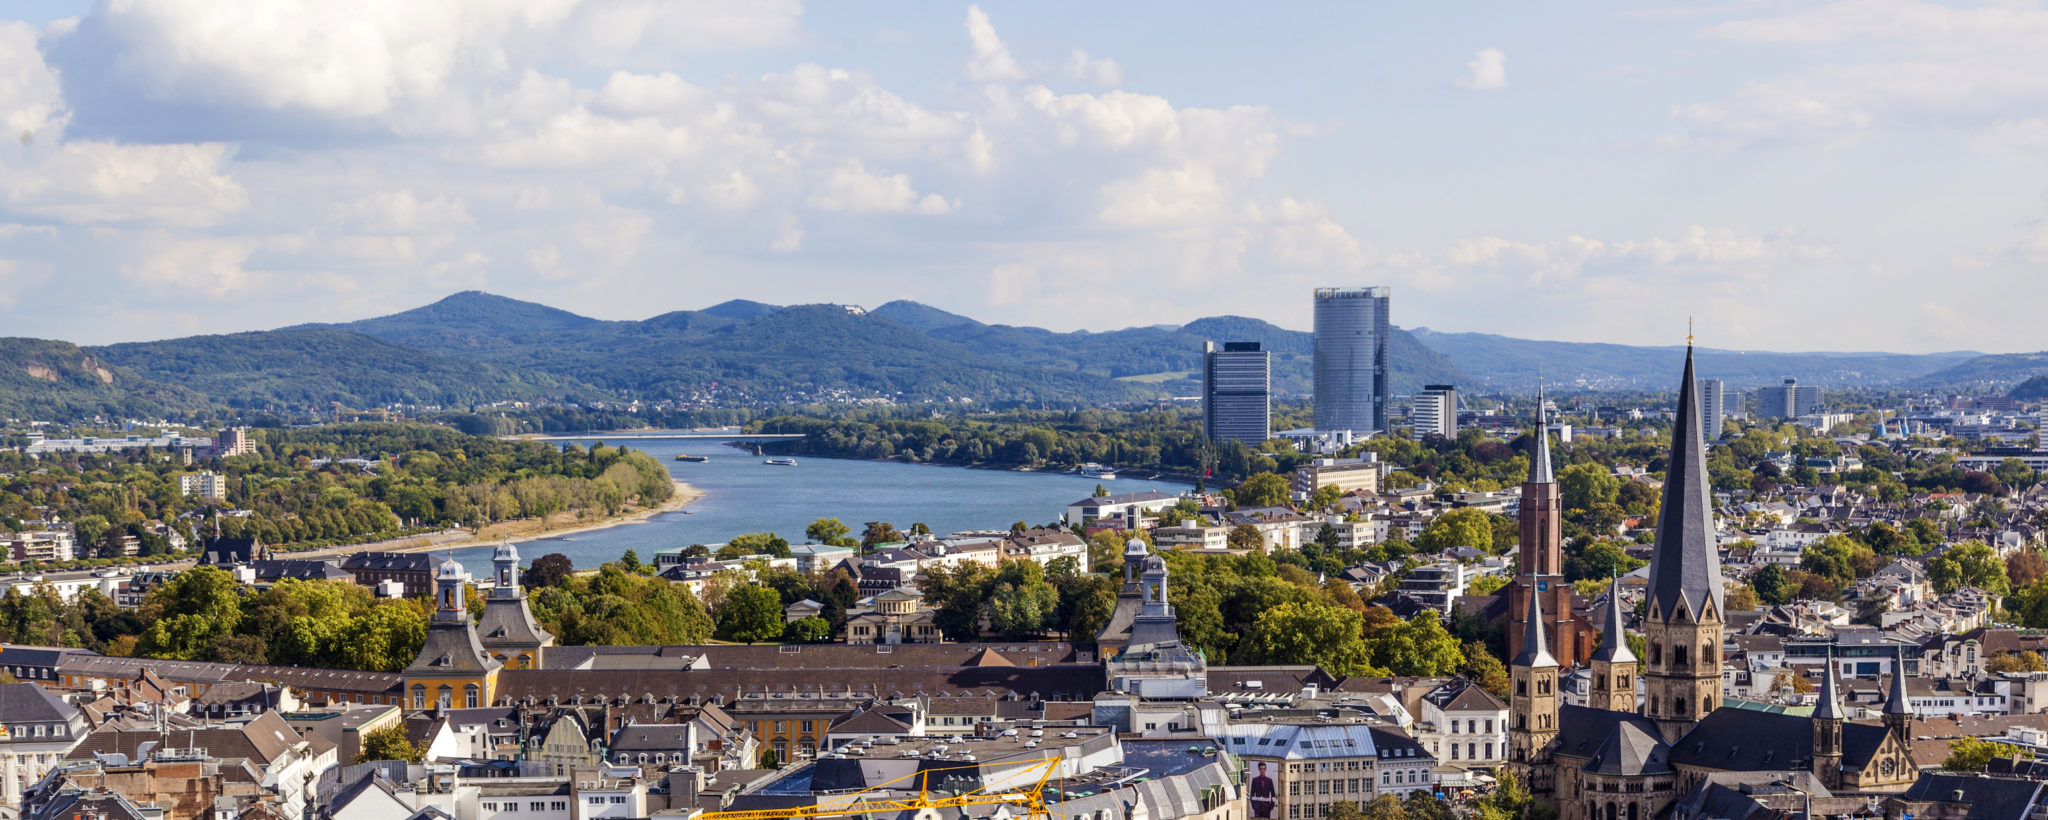 Haushaltsauflösung und Entrümpelung Bonn - wir bieten Haushaltsauflösungen, Entrümpelungen, Wohnungsauflösungen, Nachlassverwertungen und Geschäftsauflösungen an.